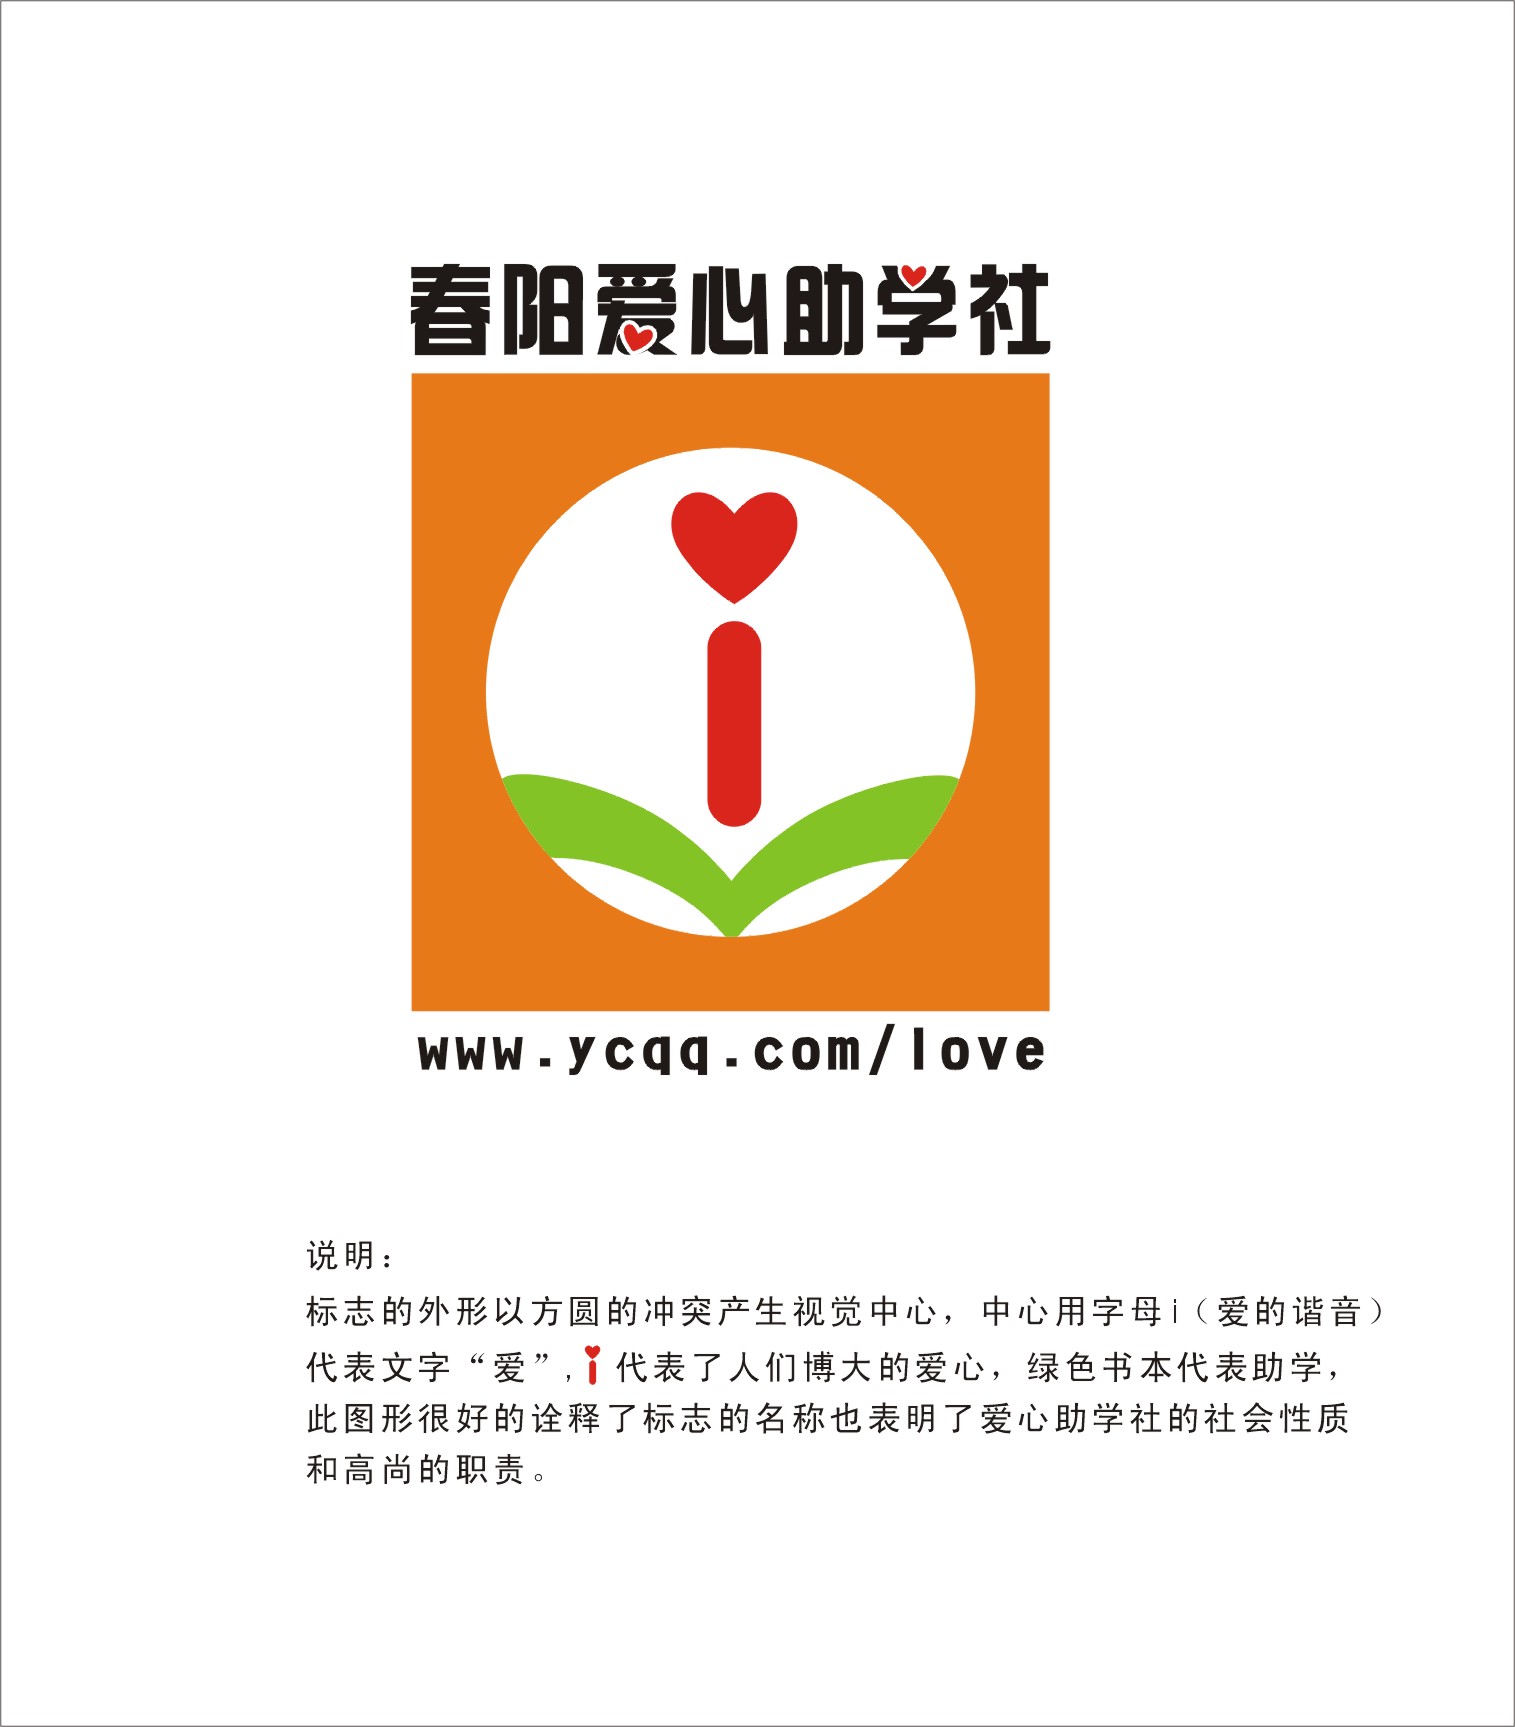 阳春爱心助学社logo设计的6097891号交稿